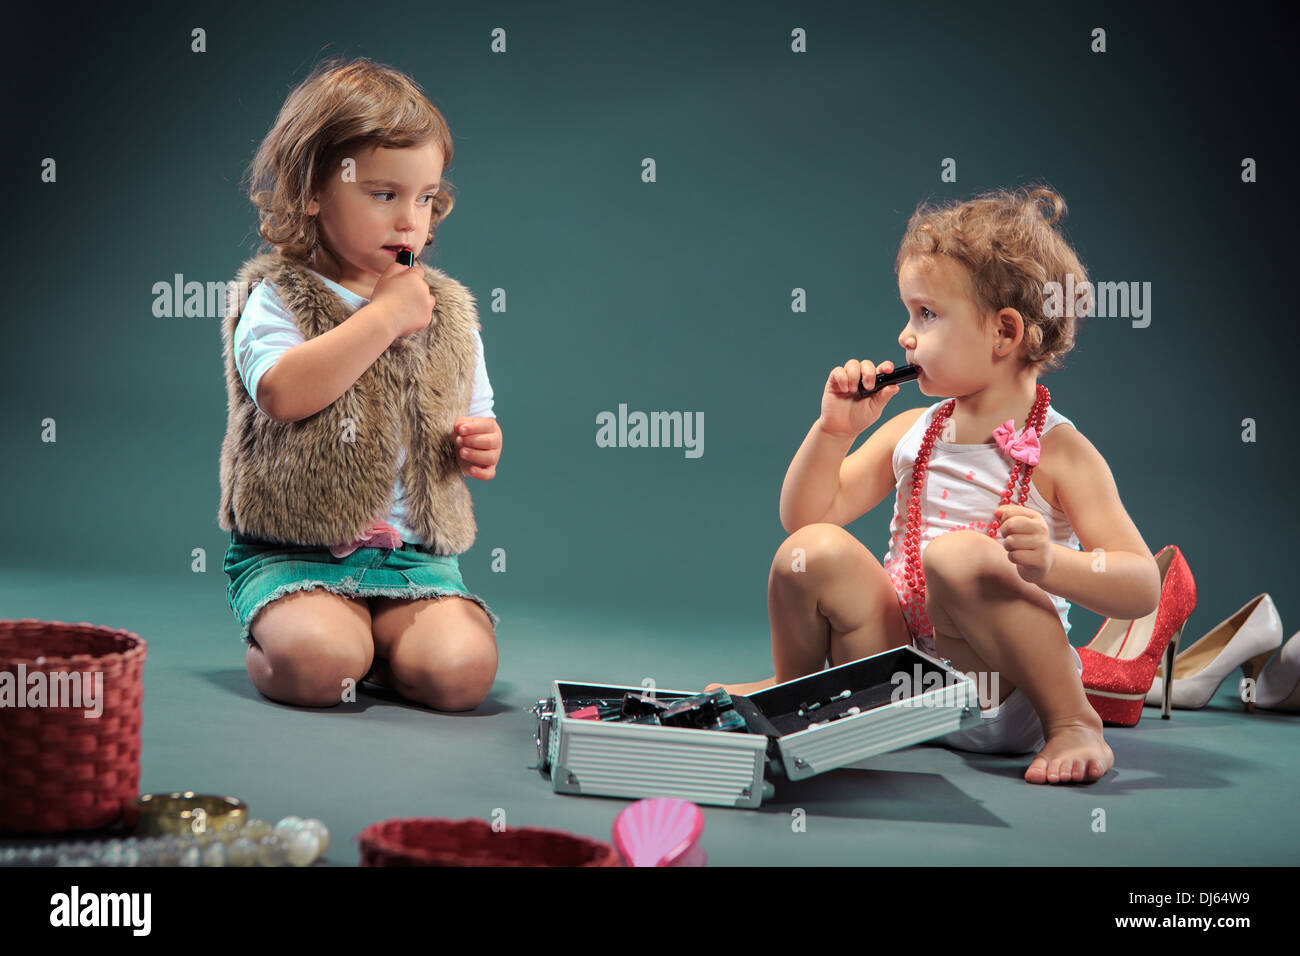 Studioaufnahme von zwei kleinen Mädchen, die sich selbst schminken Stockfoto